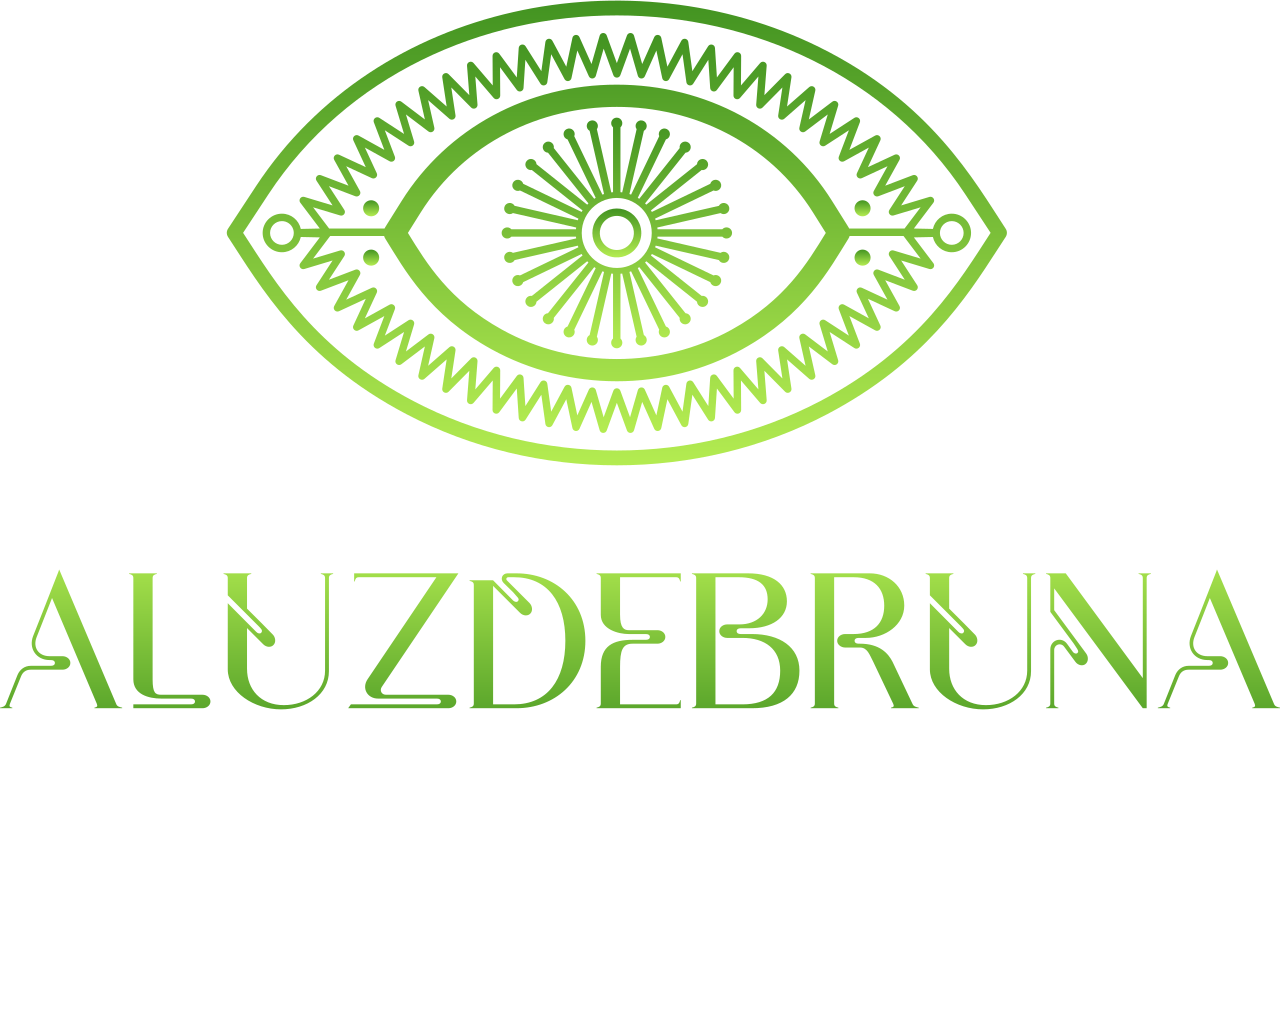 aluzdebruna's logo